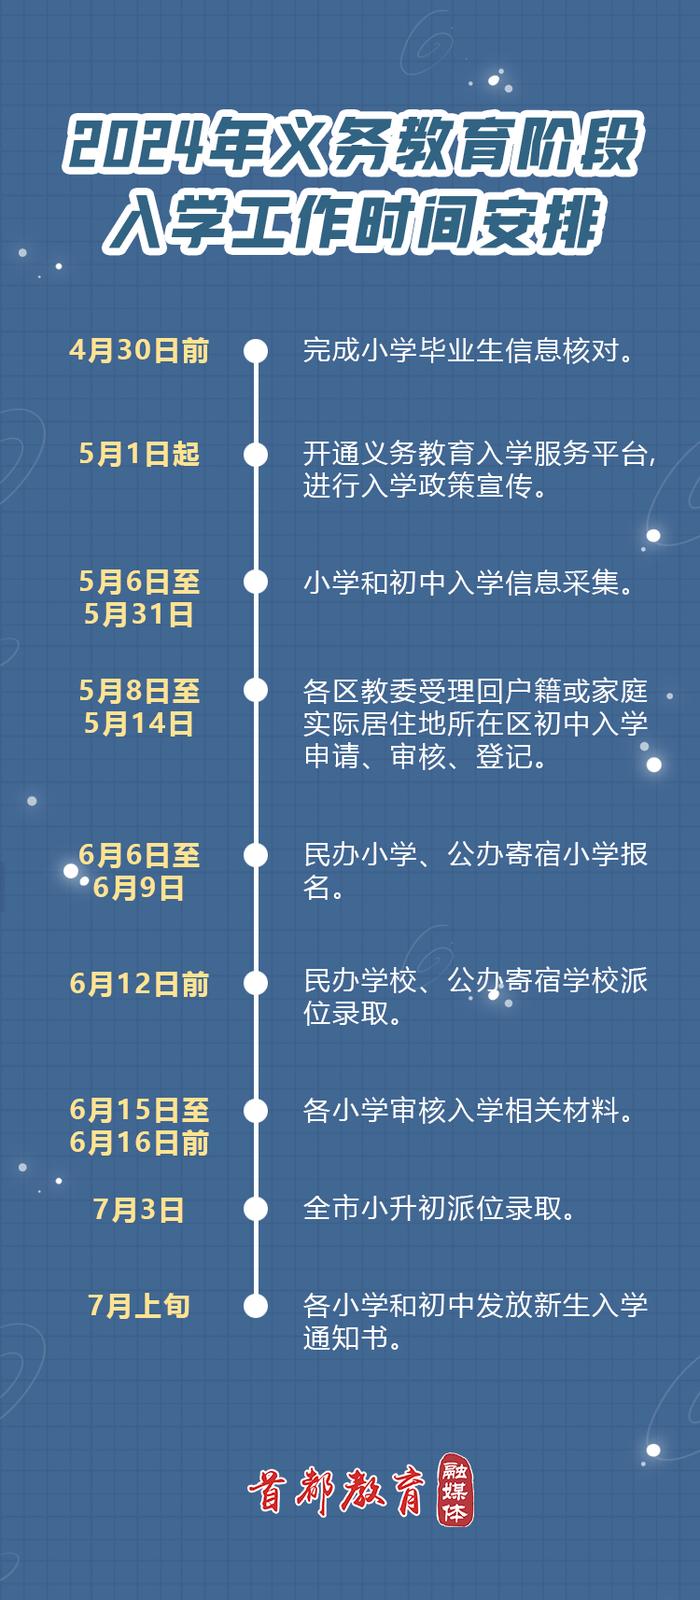 今年北京义务教育阶段入学政策发布，进一步强化“四个严禁”